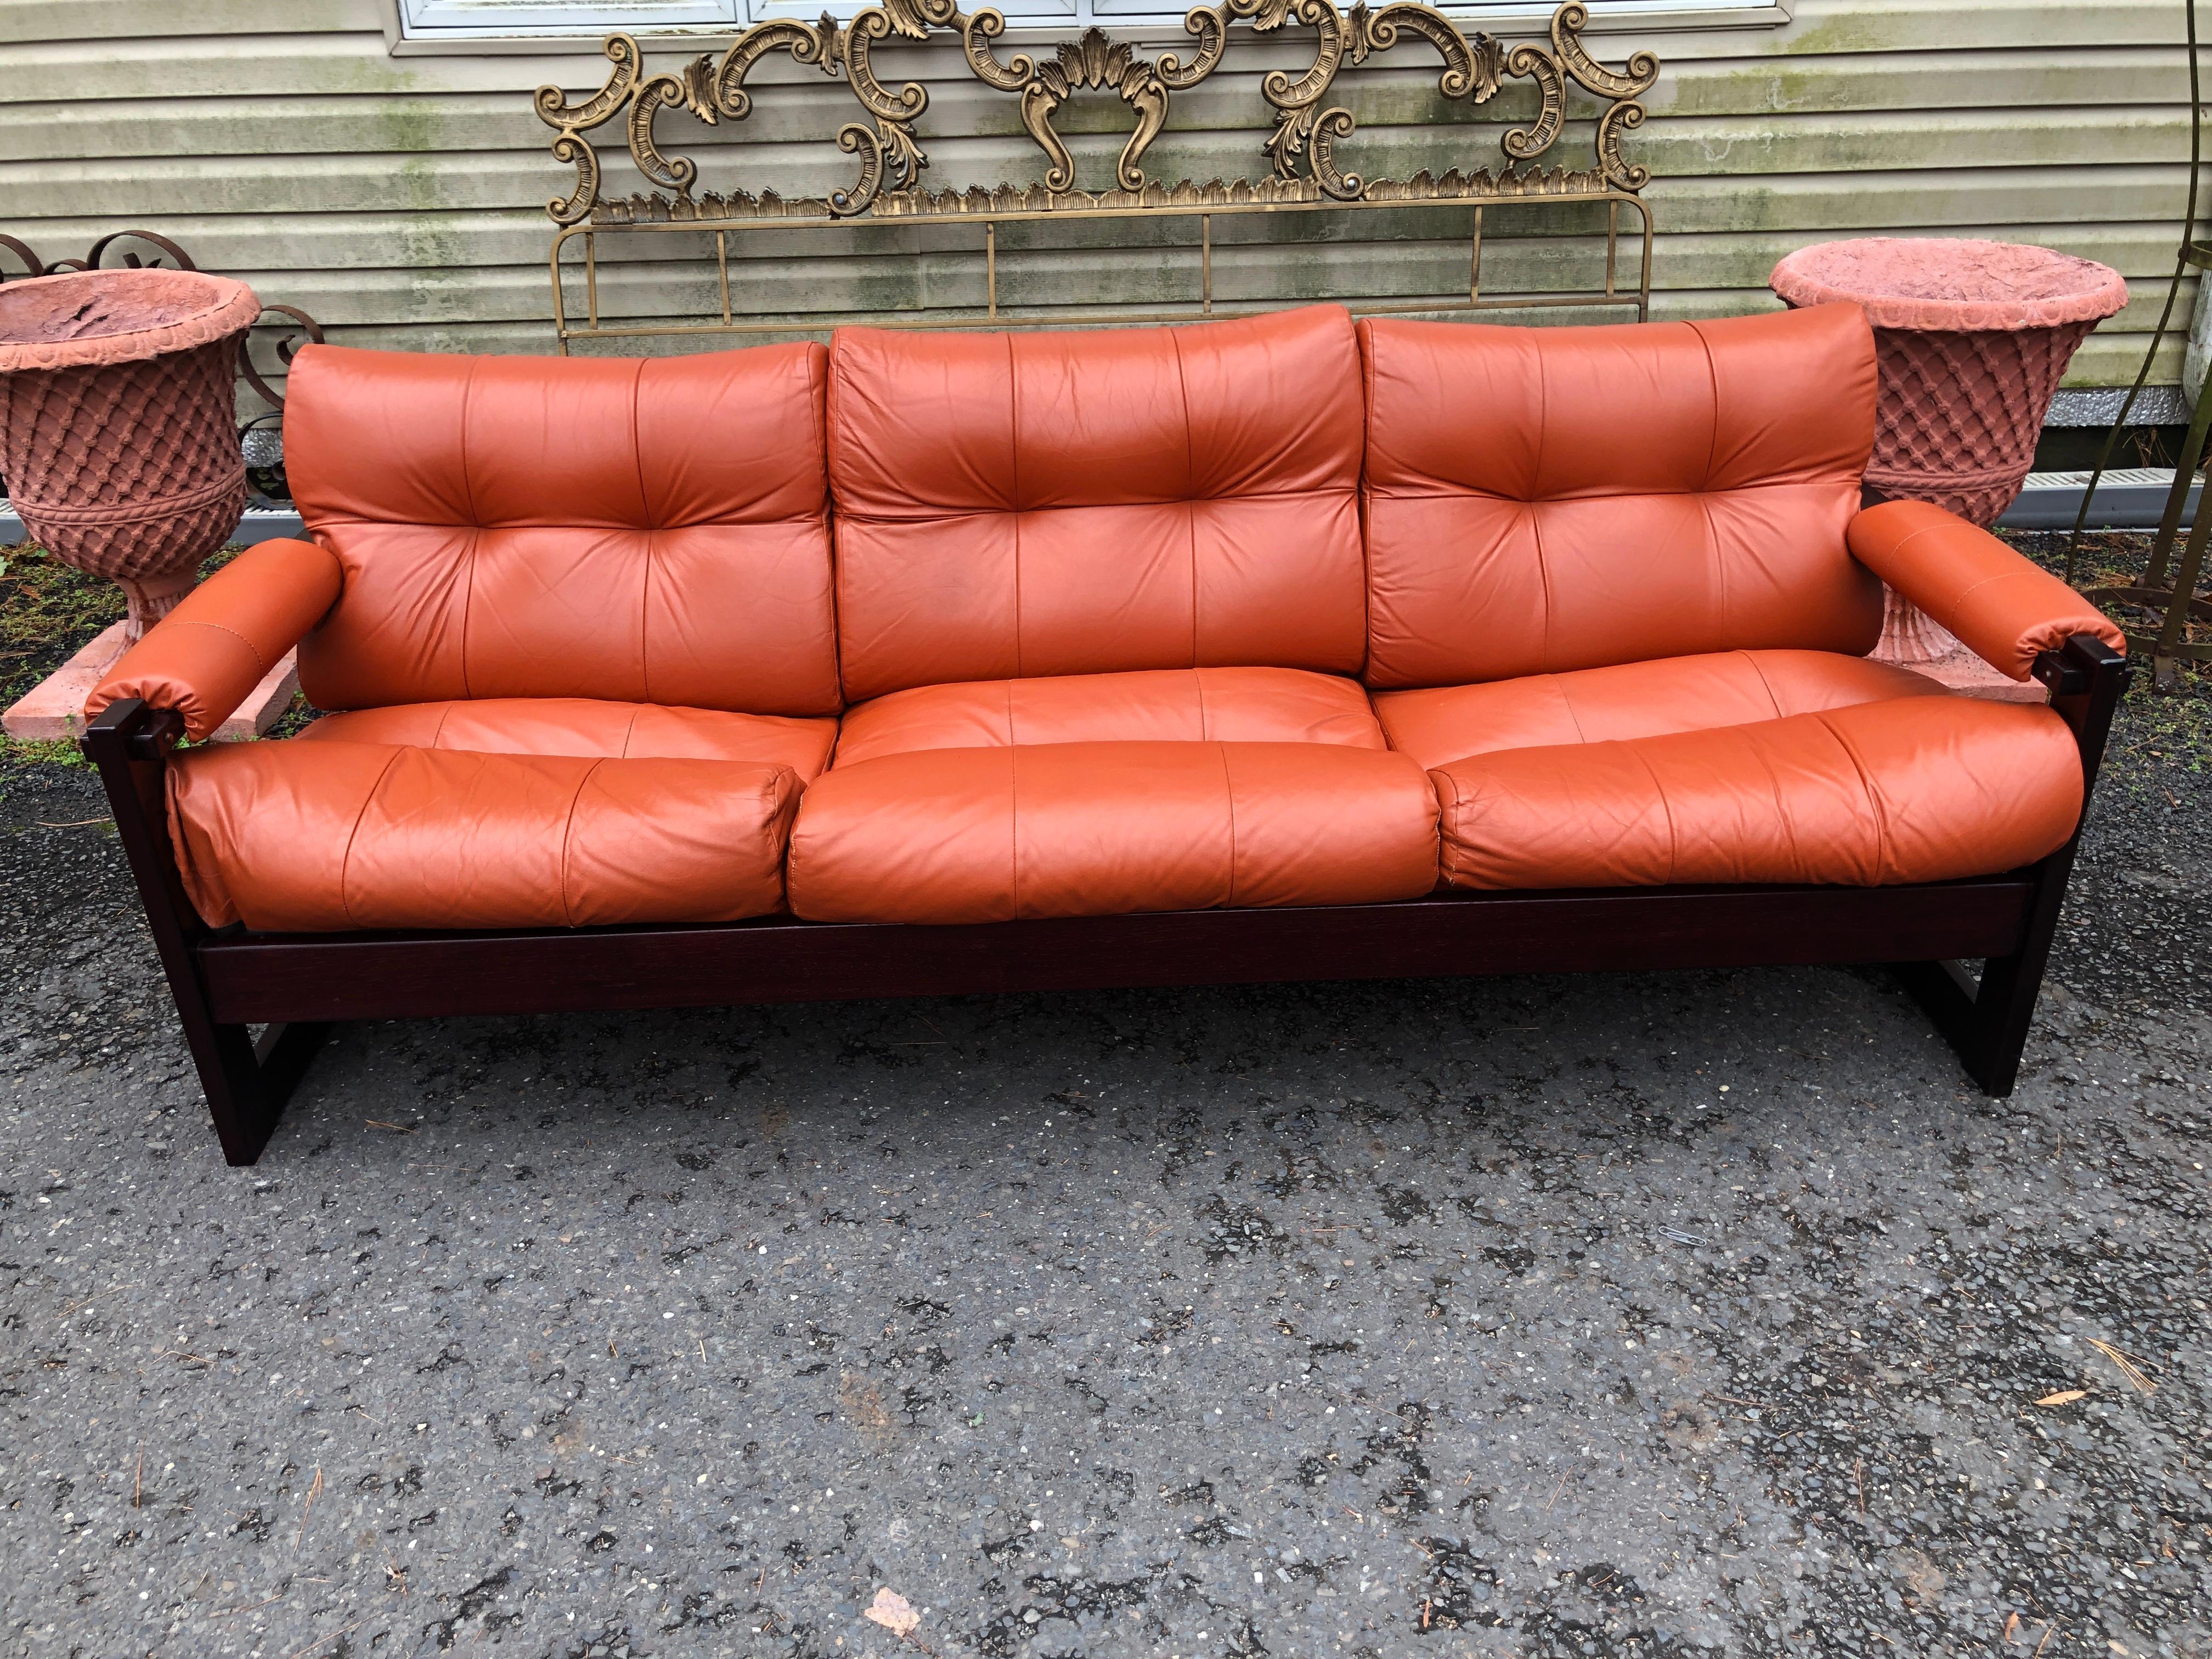 Wunderschönes 3-Sitzer-Sofa S-1 von Percival Lafer aus Rosenholz und Leder.  Das Design des S-1 zeichnet sich durch brasilianische Exotik gepaart mit skandinavischer Sensibilität aus.  Von Lafers Entwürfen ist die S-1 etwas seltener zu finden als